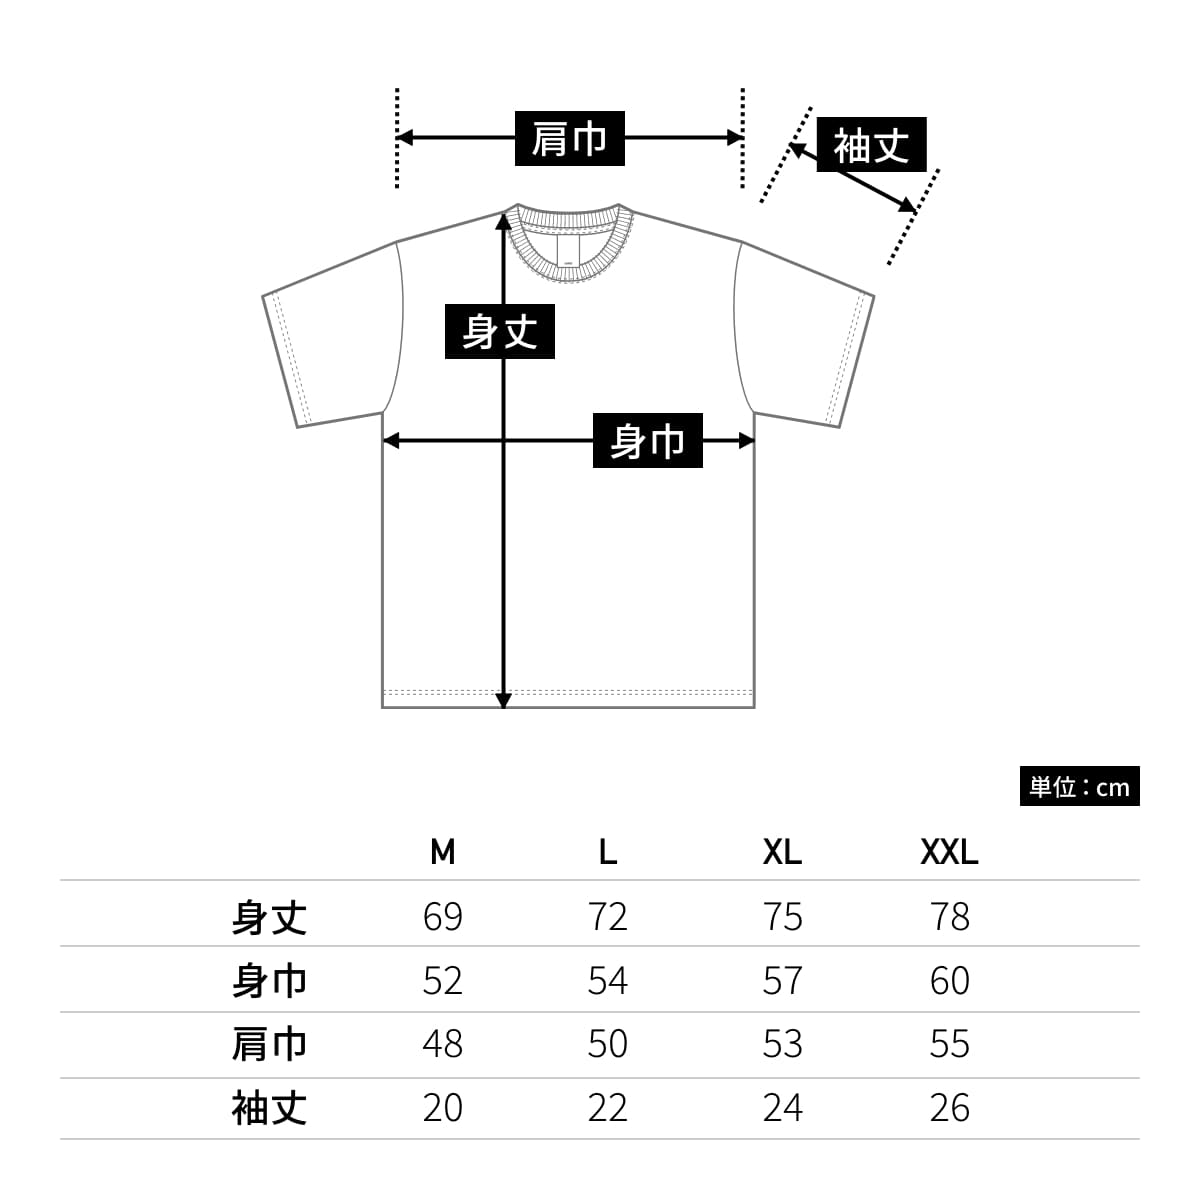 ピグメントTシャツ | メンズ | 1枚 | PGT-144 | Pピンク